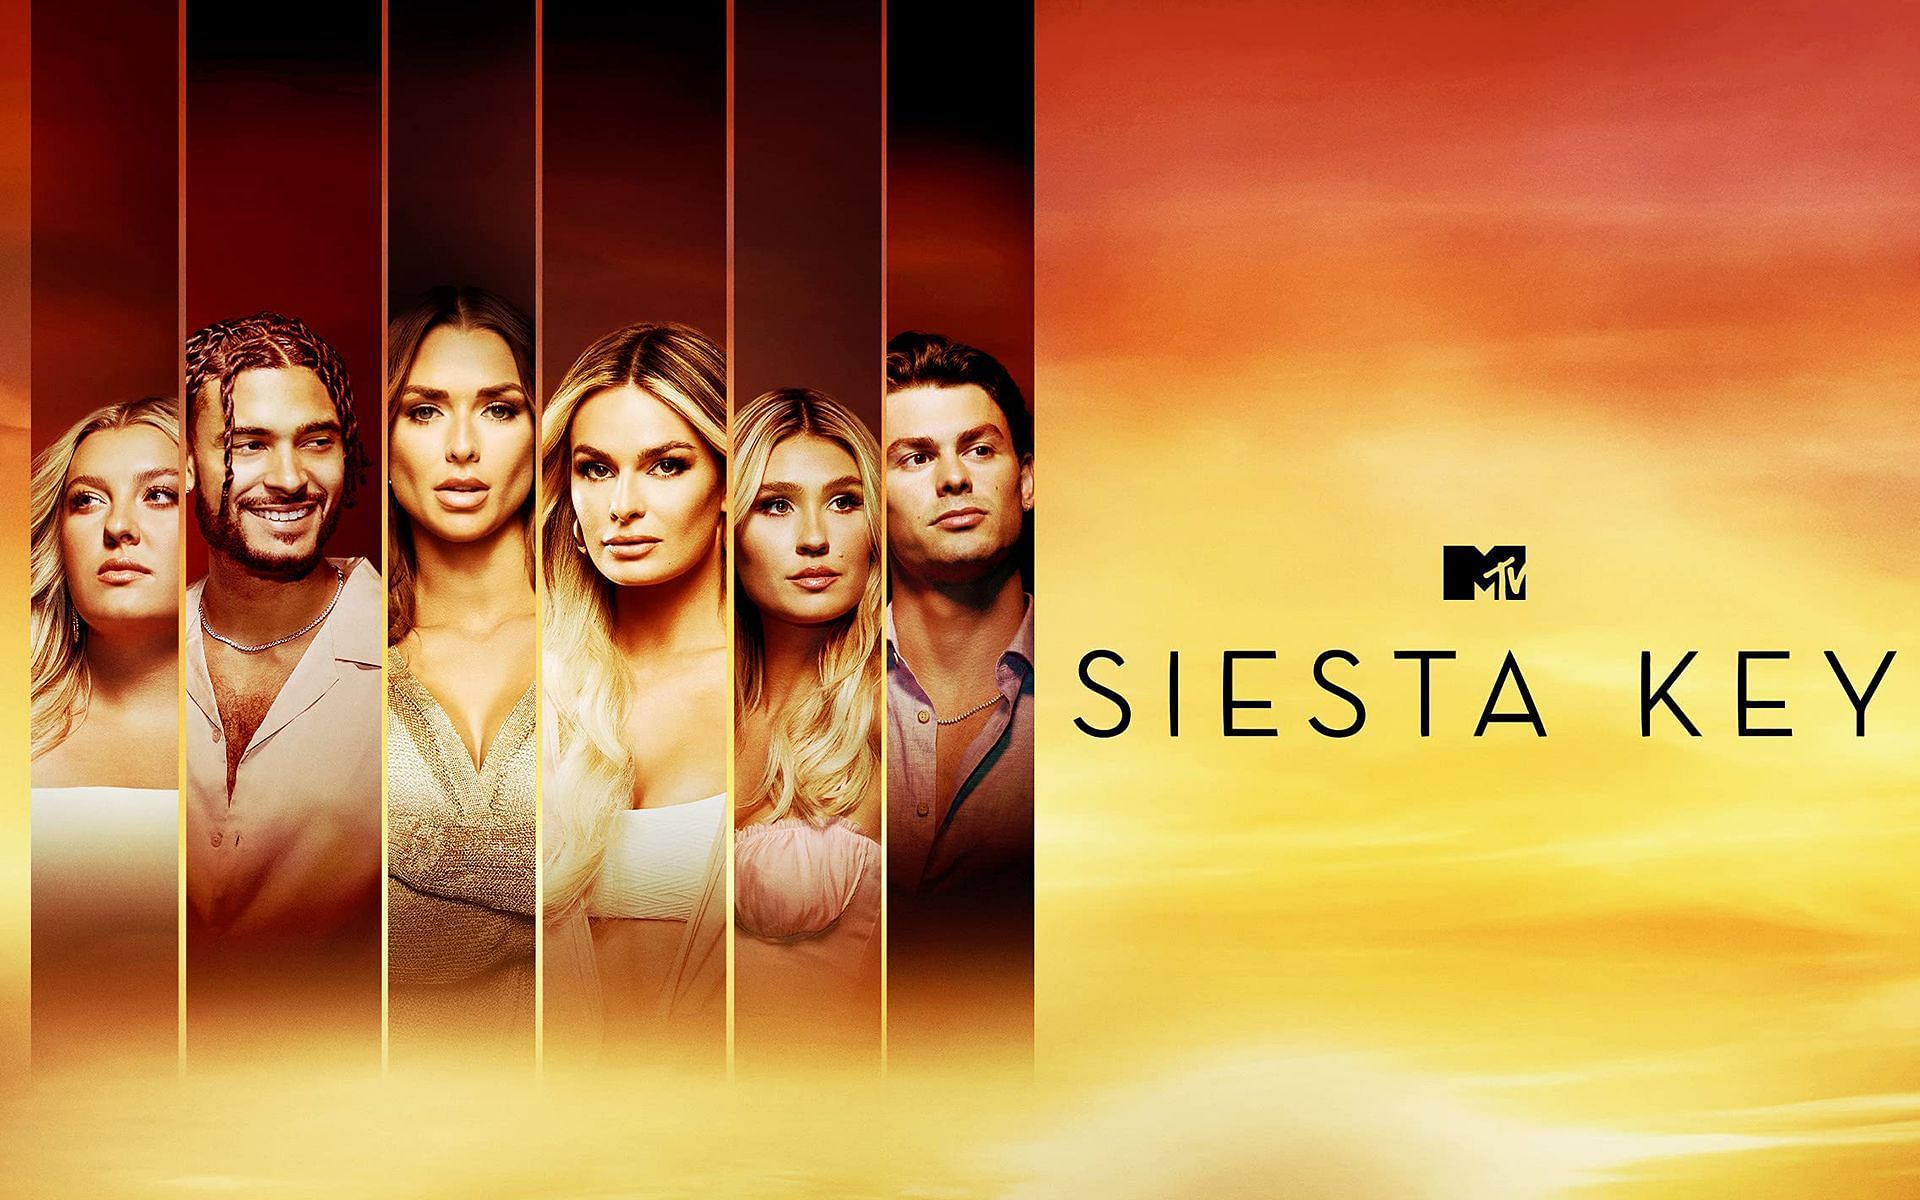 Siesta Key Season 4 returns on March 10, 2022, at 9 pm on MTV (Image via MTV.com)